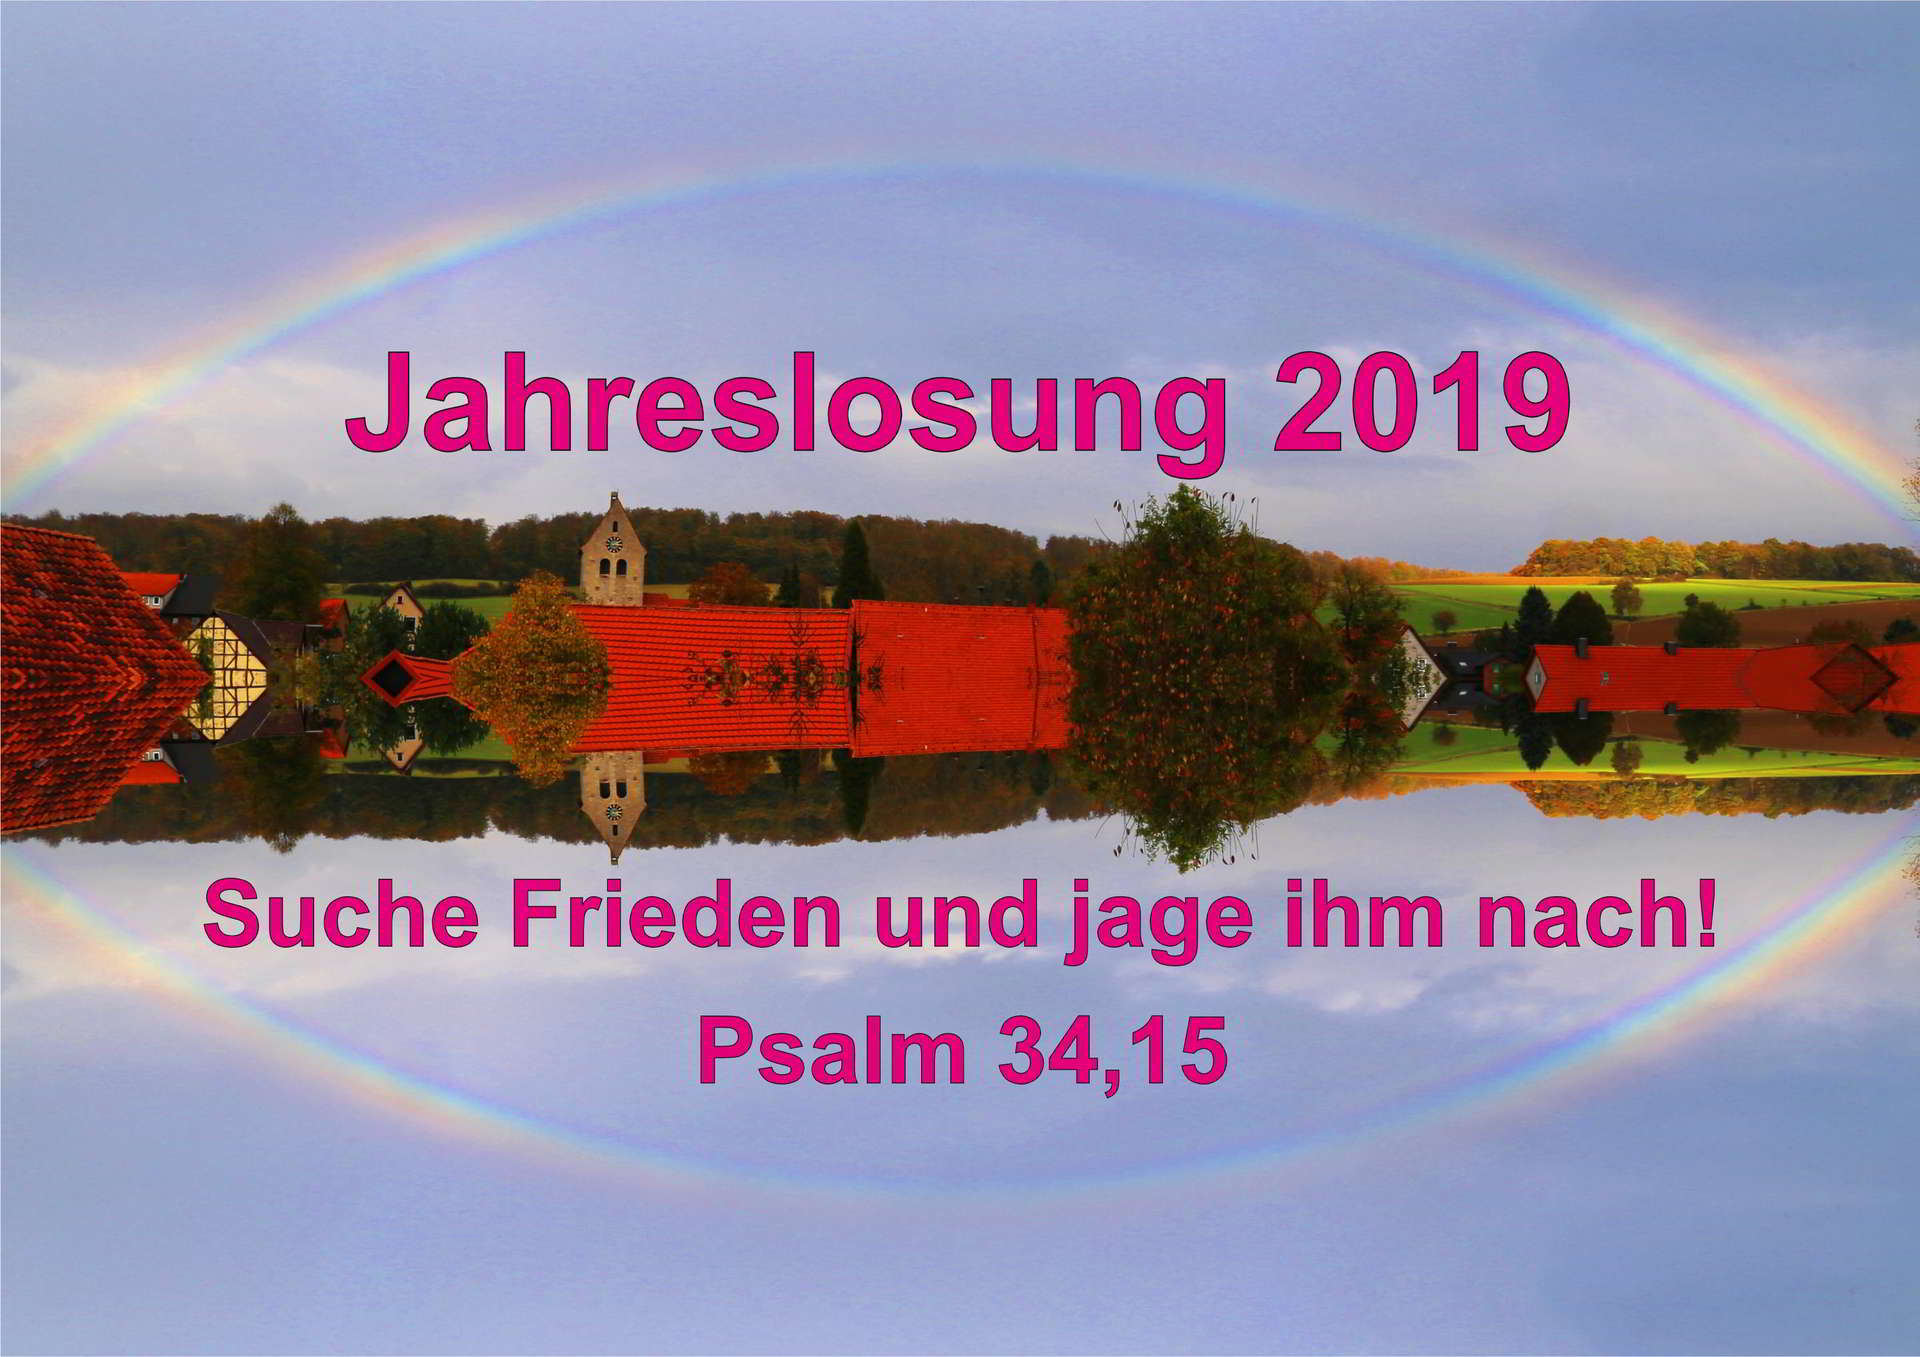 Jahreslosung 2019: "Suche Frieden und jage ihm nach!" Psalm 34,15